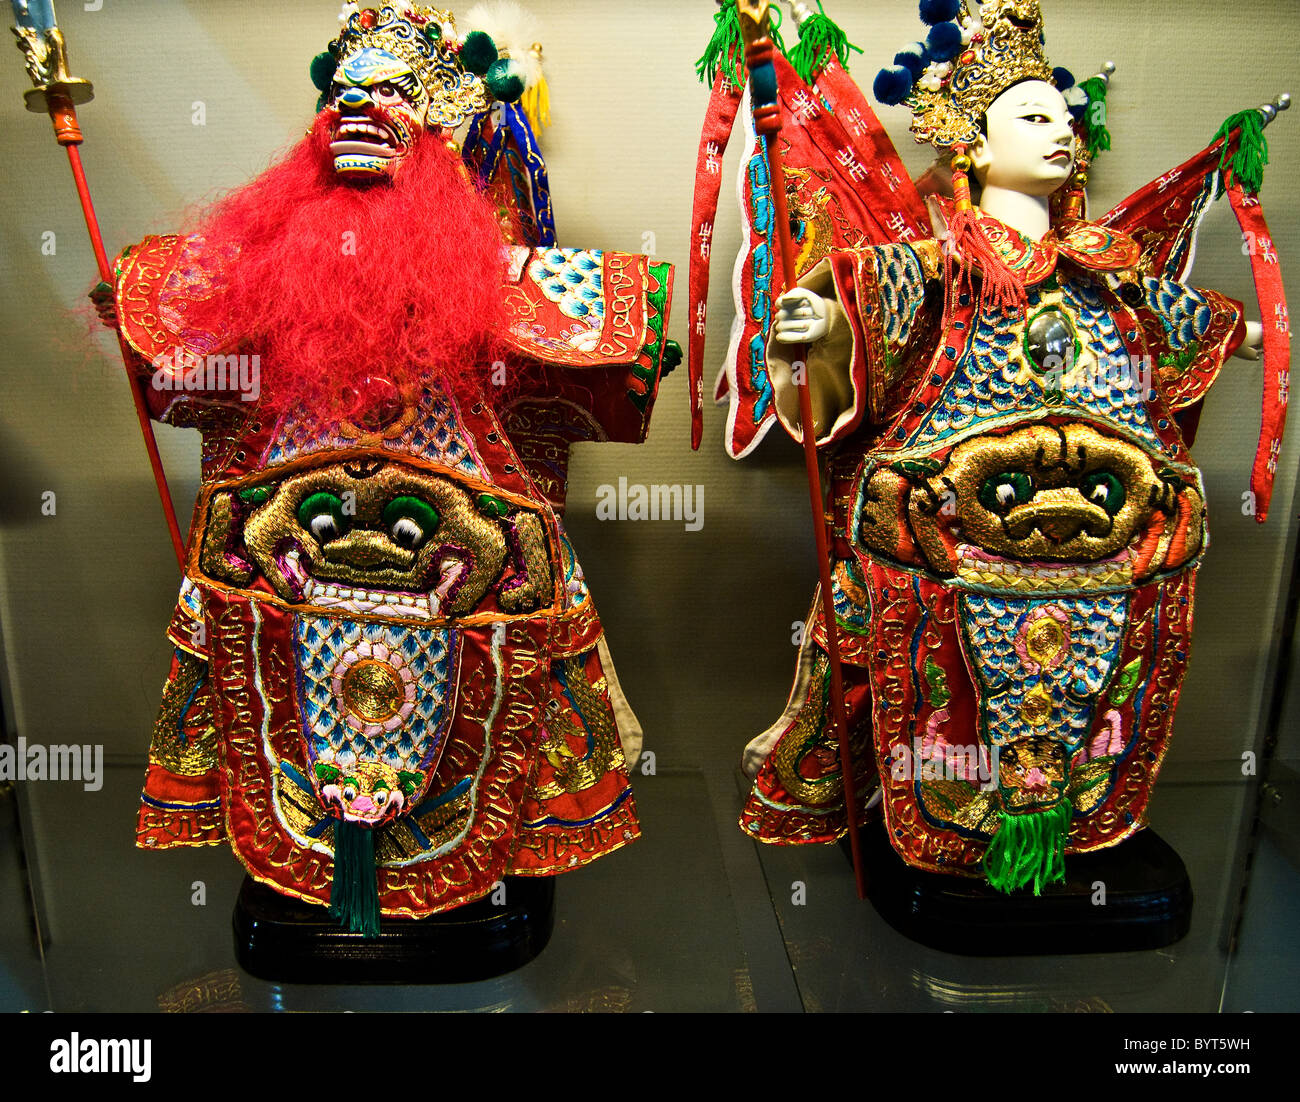 Traditionelle Handpuppen in Quanzhou, China Stockfotografie - Alamy